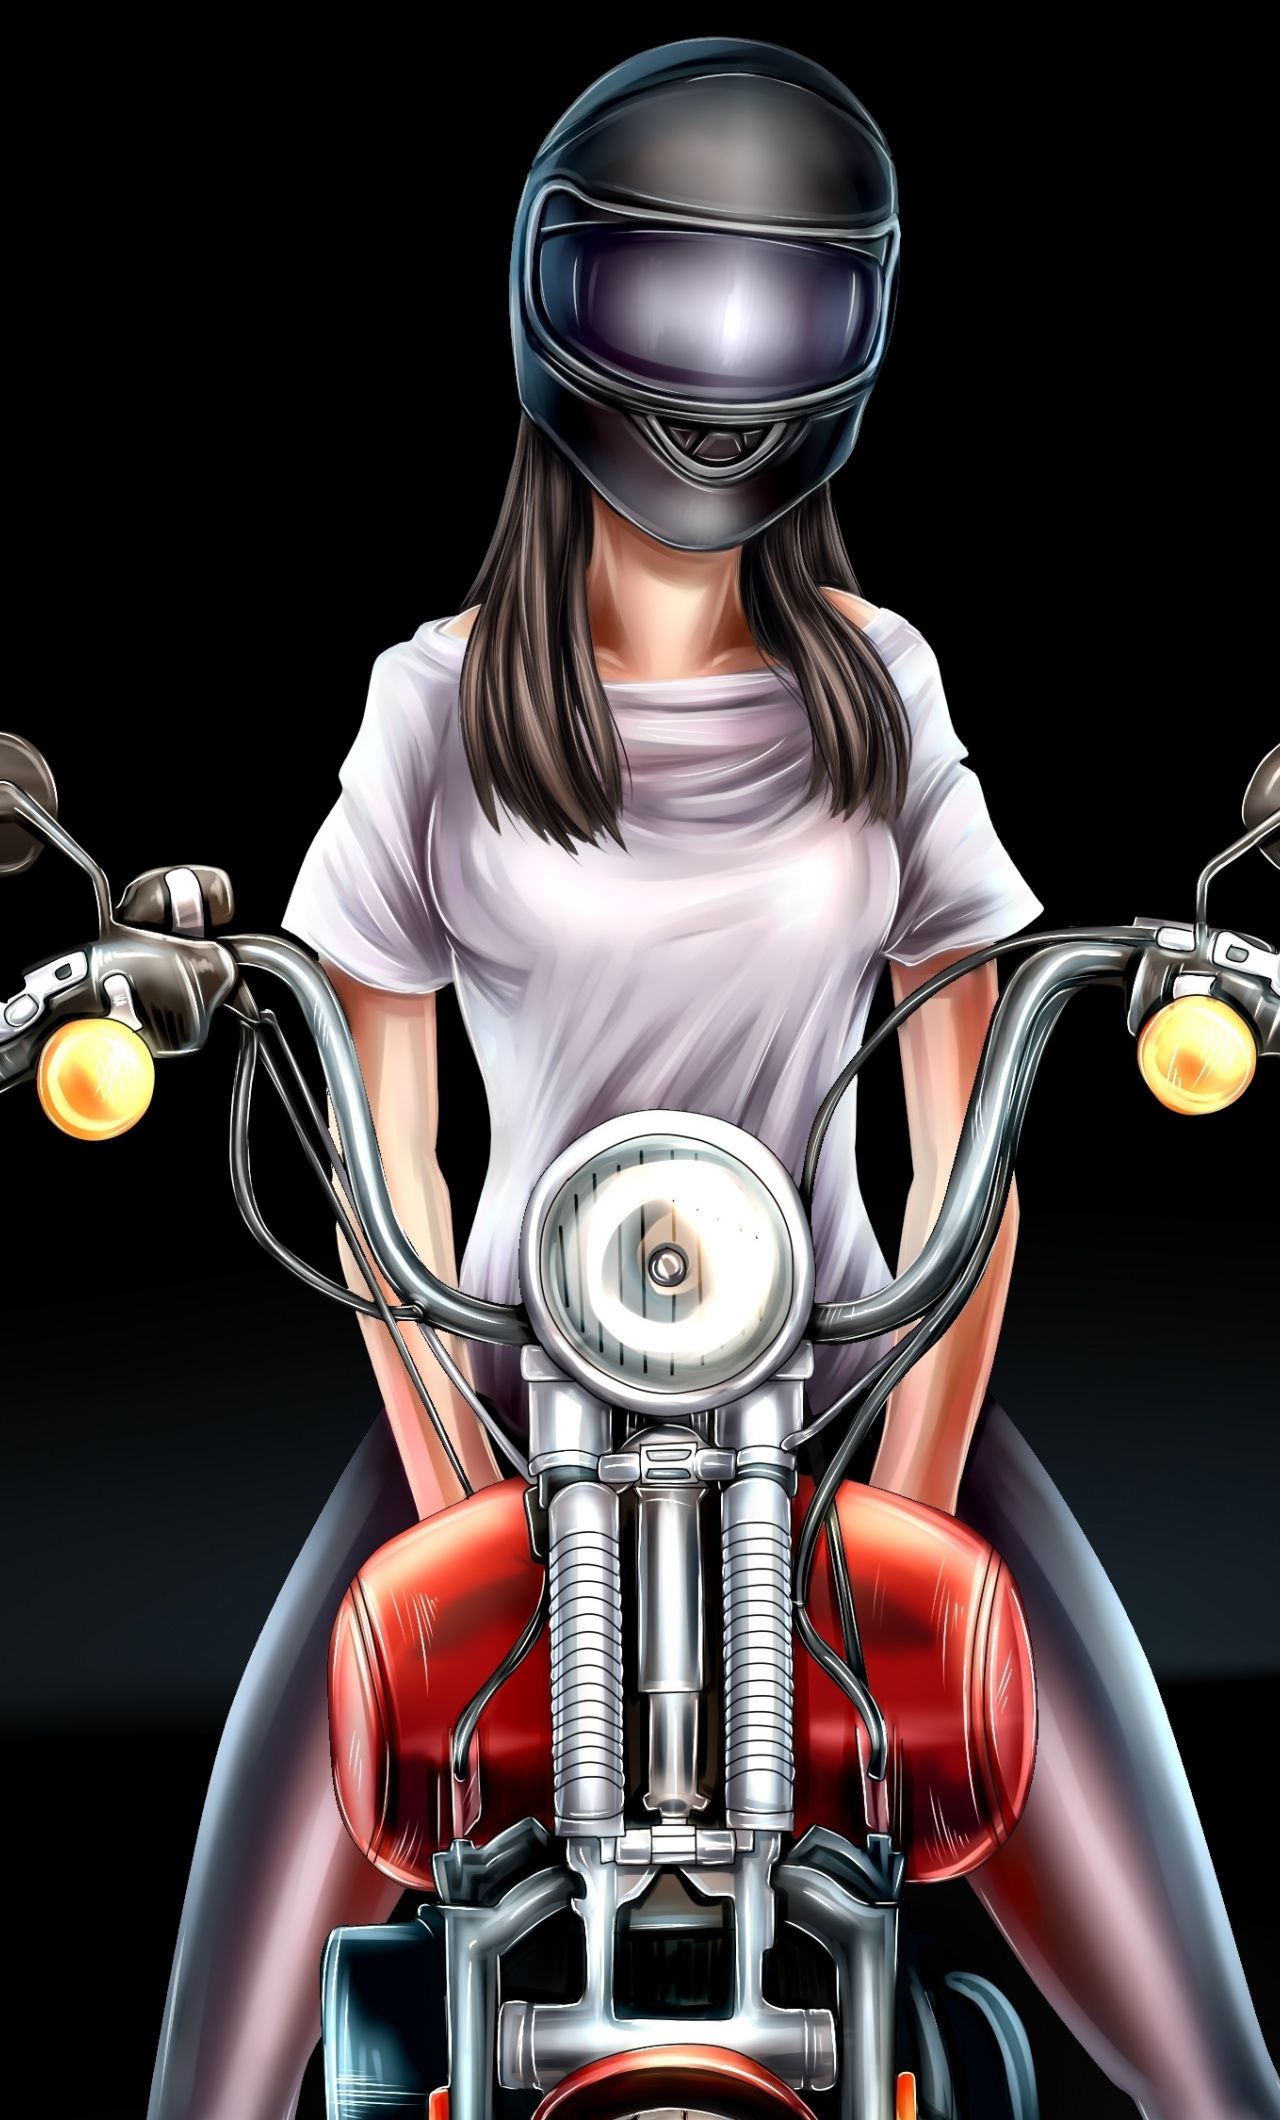  Motorrad Girl Hintergrundbild 1280x2120. Canvas painting ideas